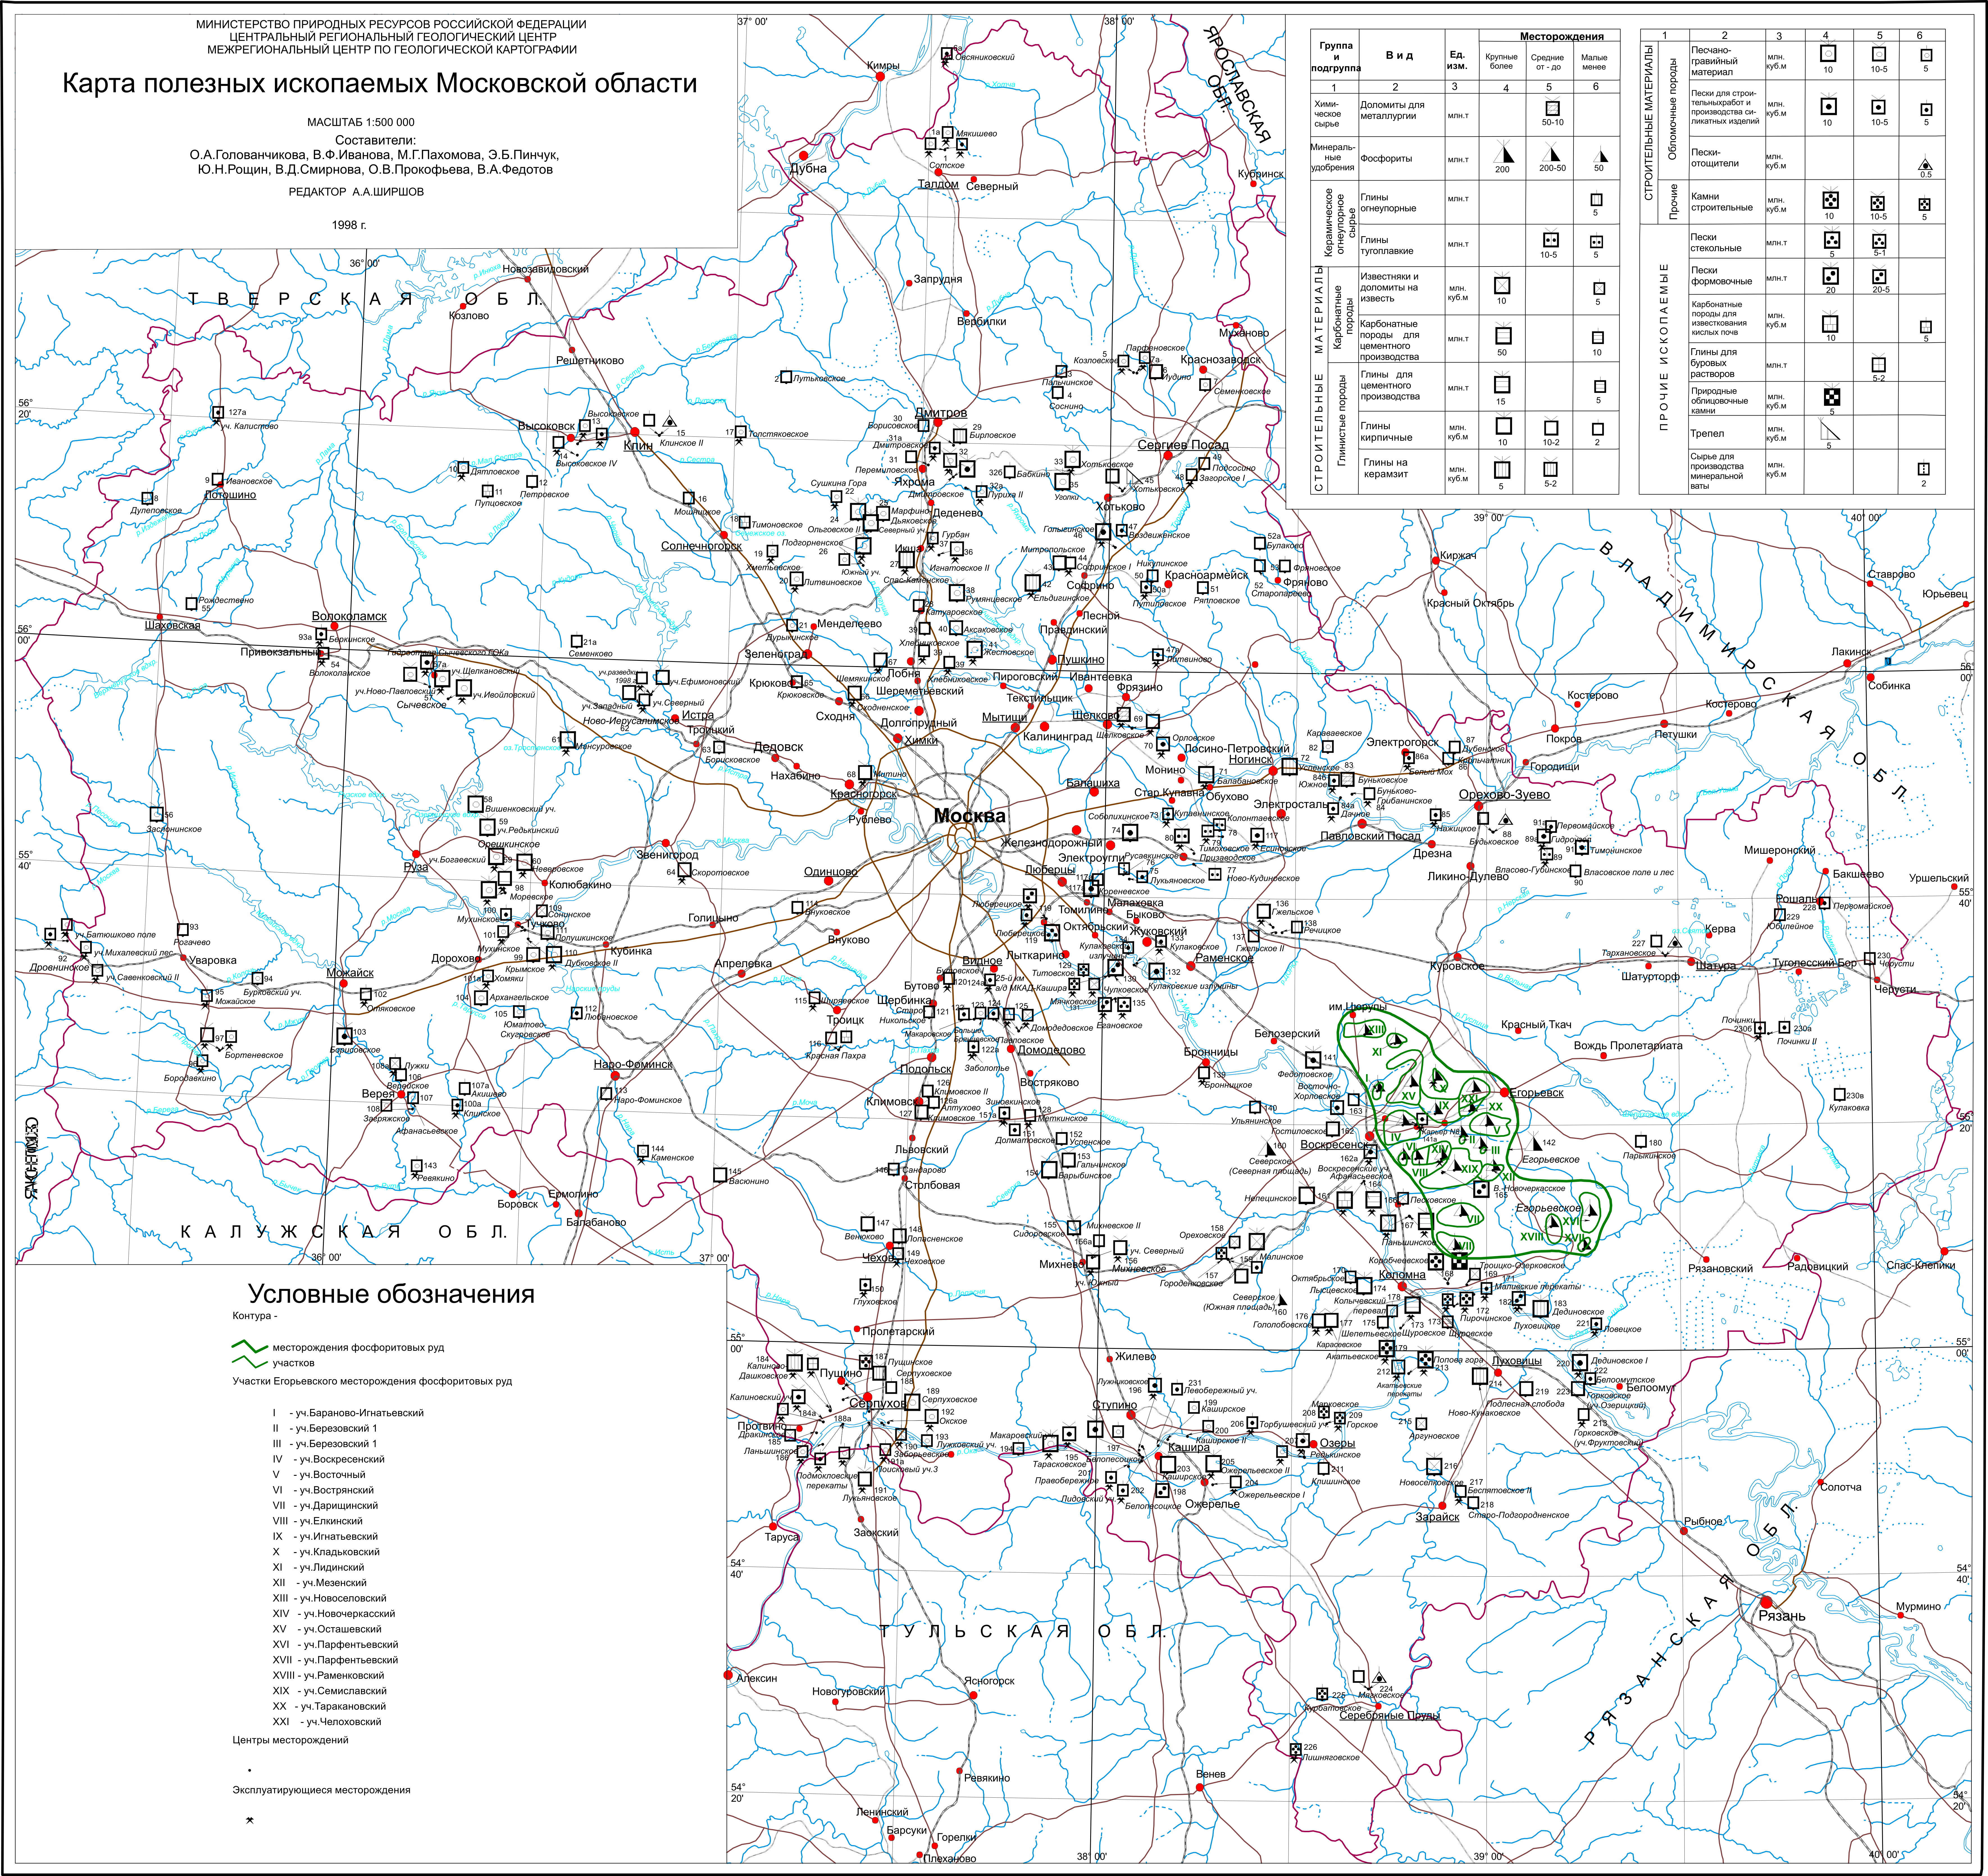 Карта полезных ископаемых Московской области.